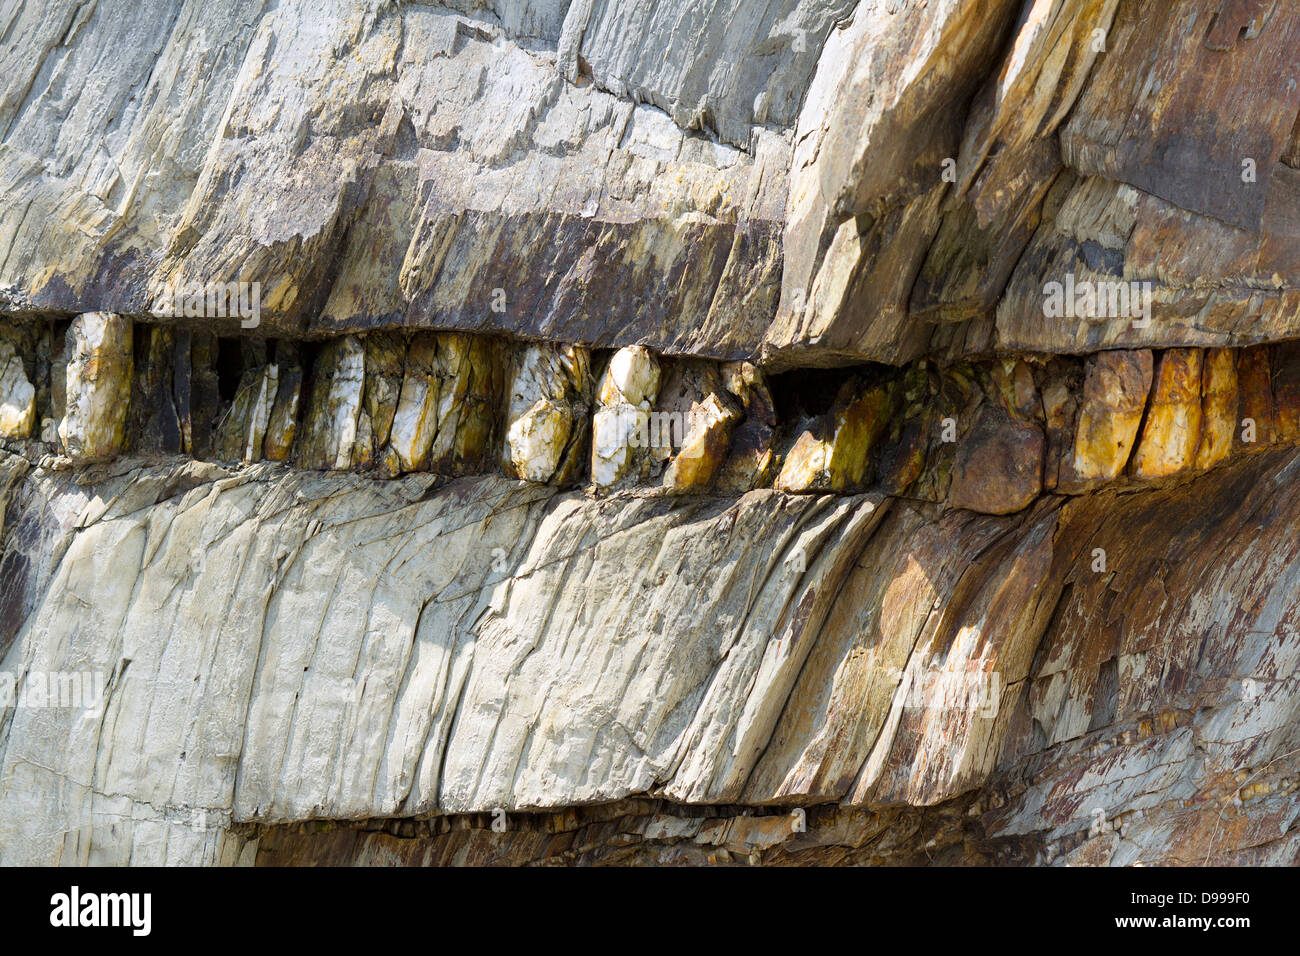 Veine de quartz dans le schiste argileux, près de Fowey, Cornwall, UK Banque D'Images